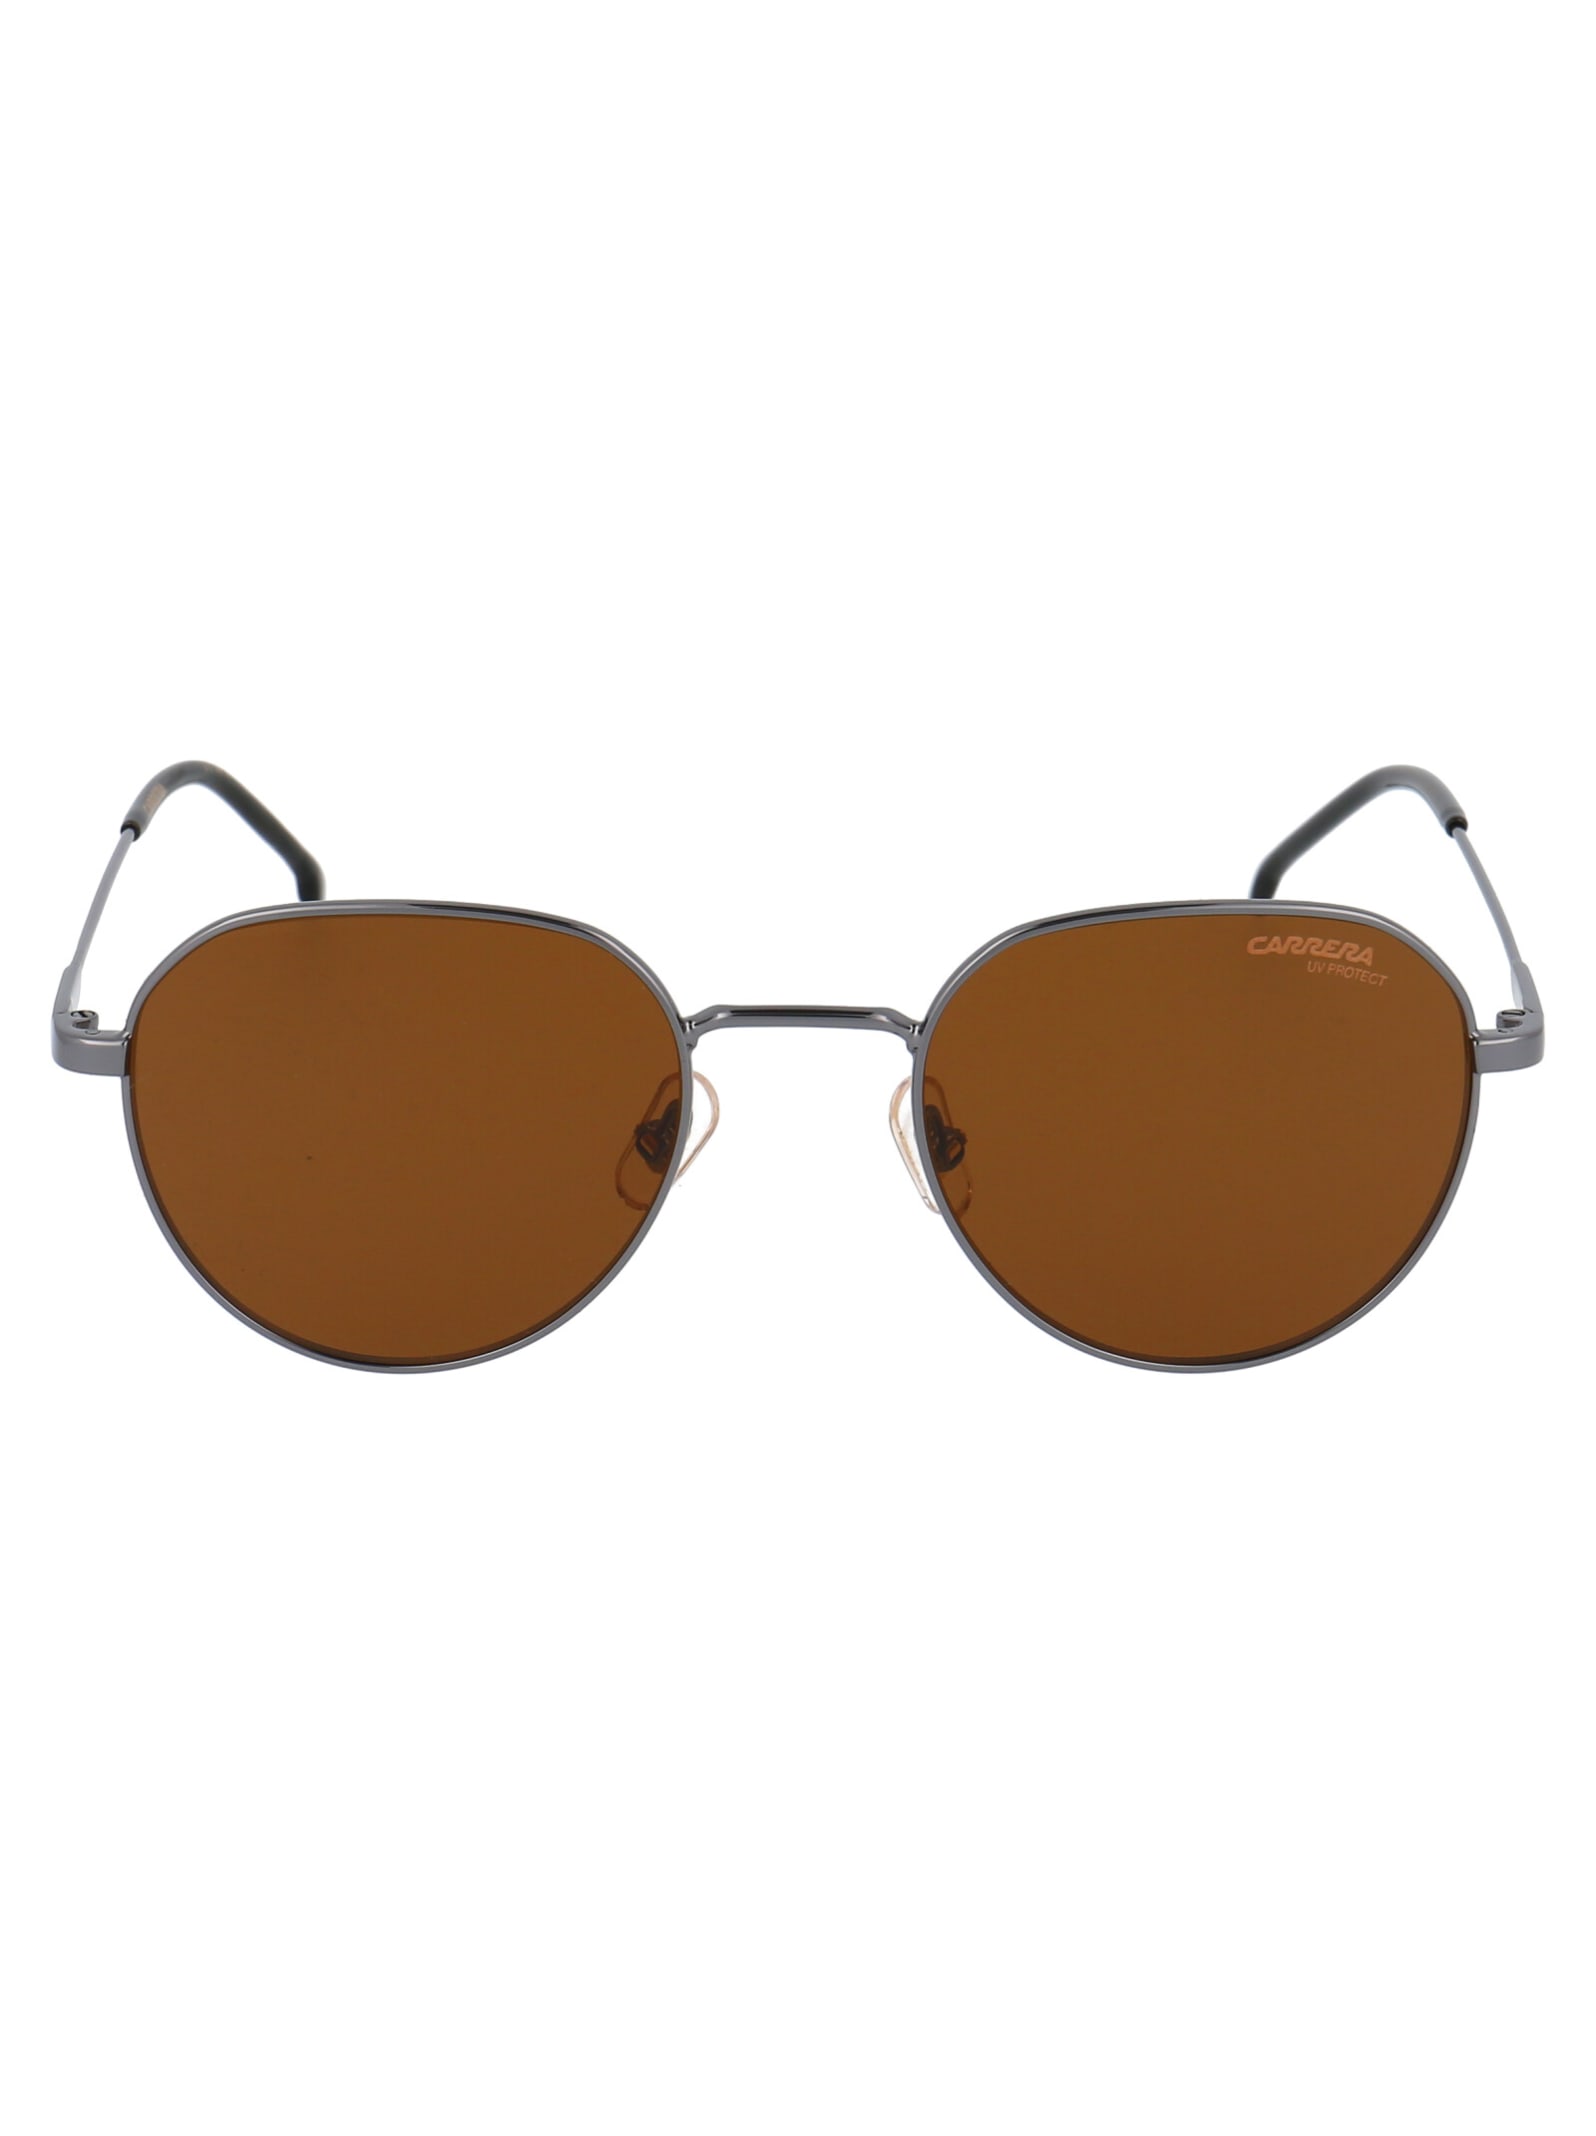 Carrera 2015t/s Sunglasses